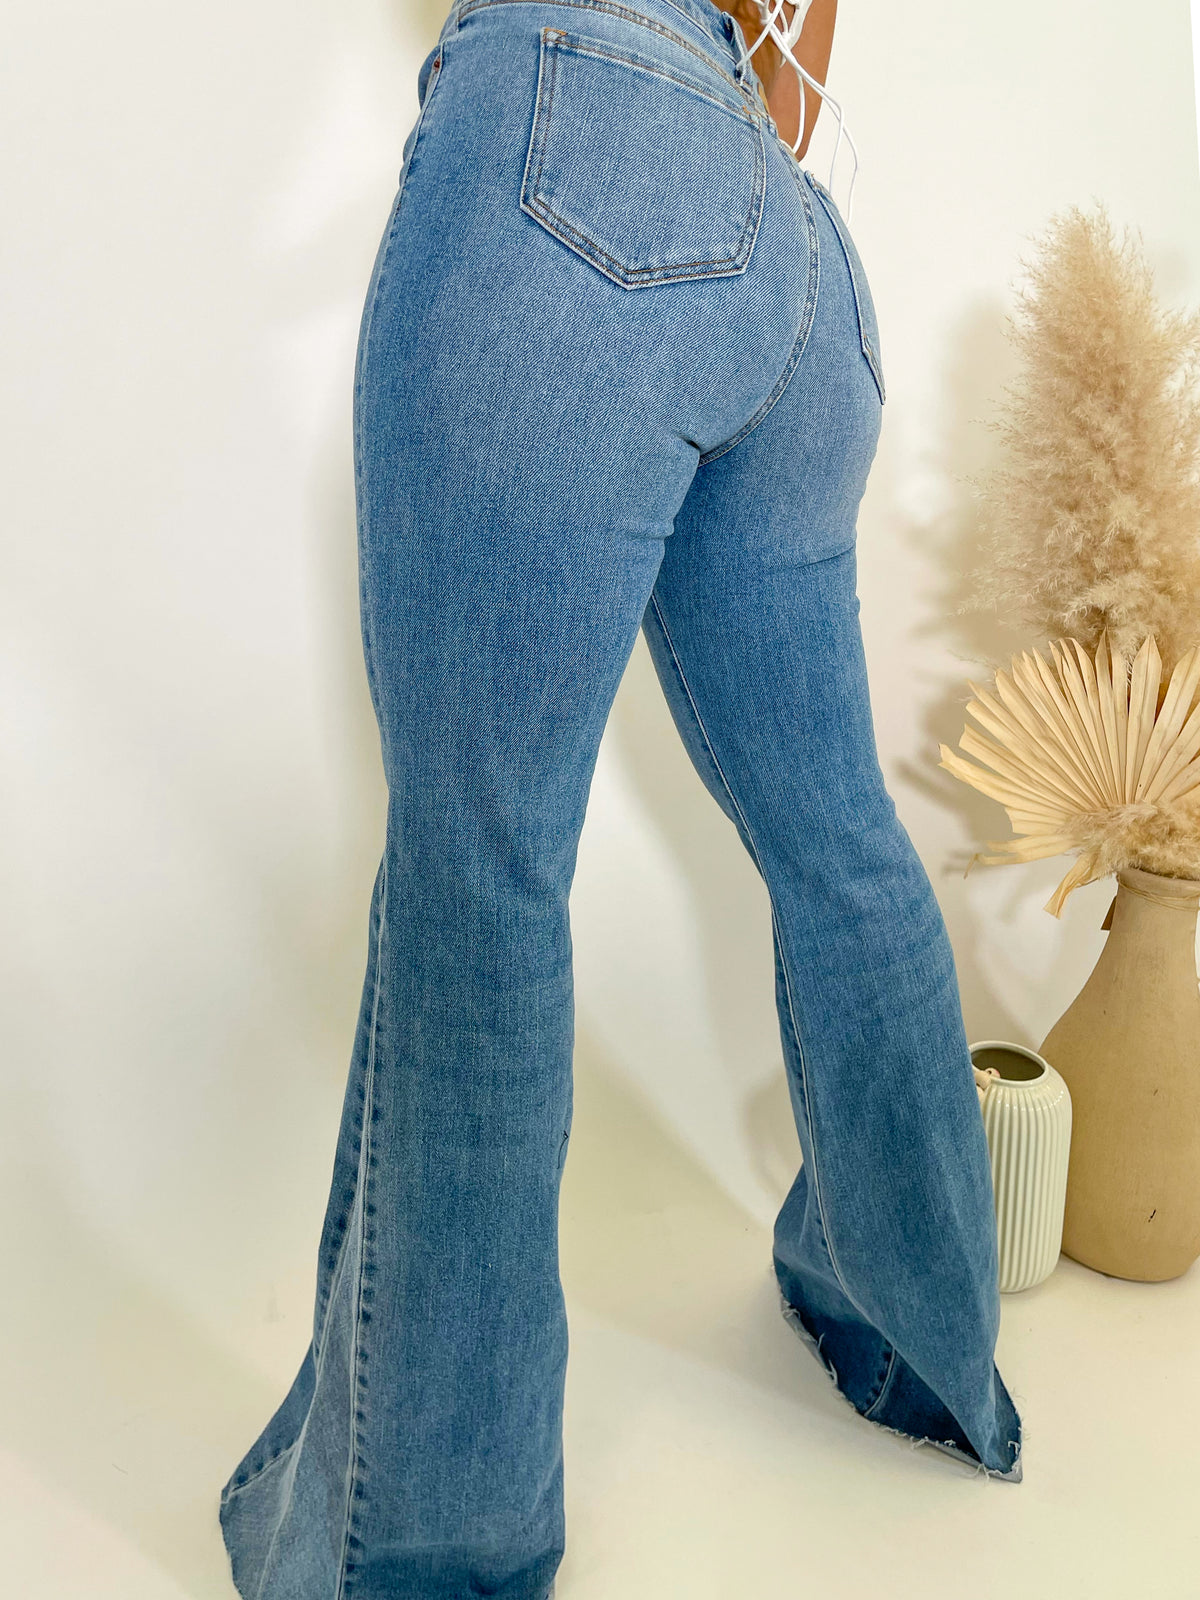 medium denim flared jeans, high rise, 2 front/back pockets, distressed hem